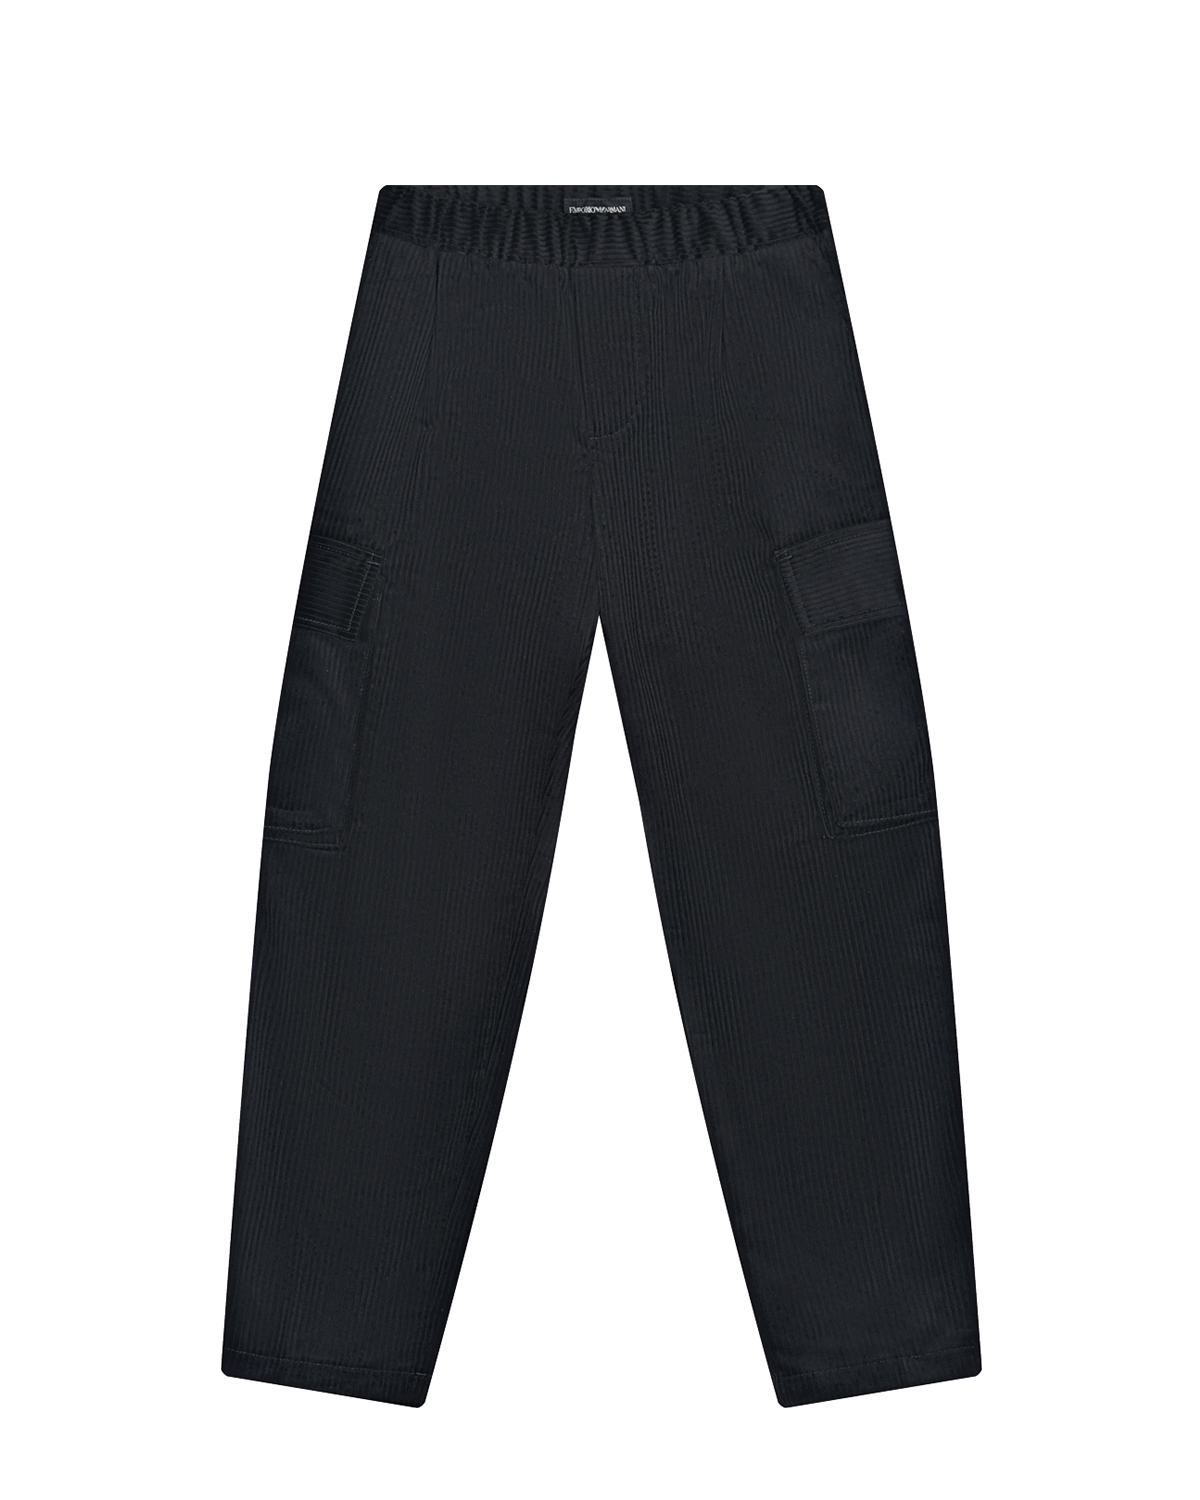 Черные вельветовые брюки с накладными карманами Emporio Armani детские